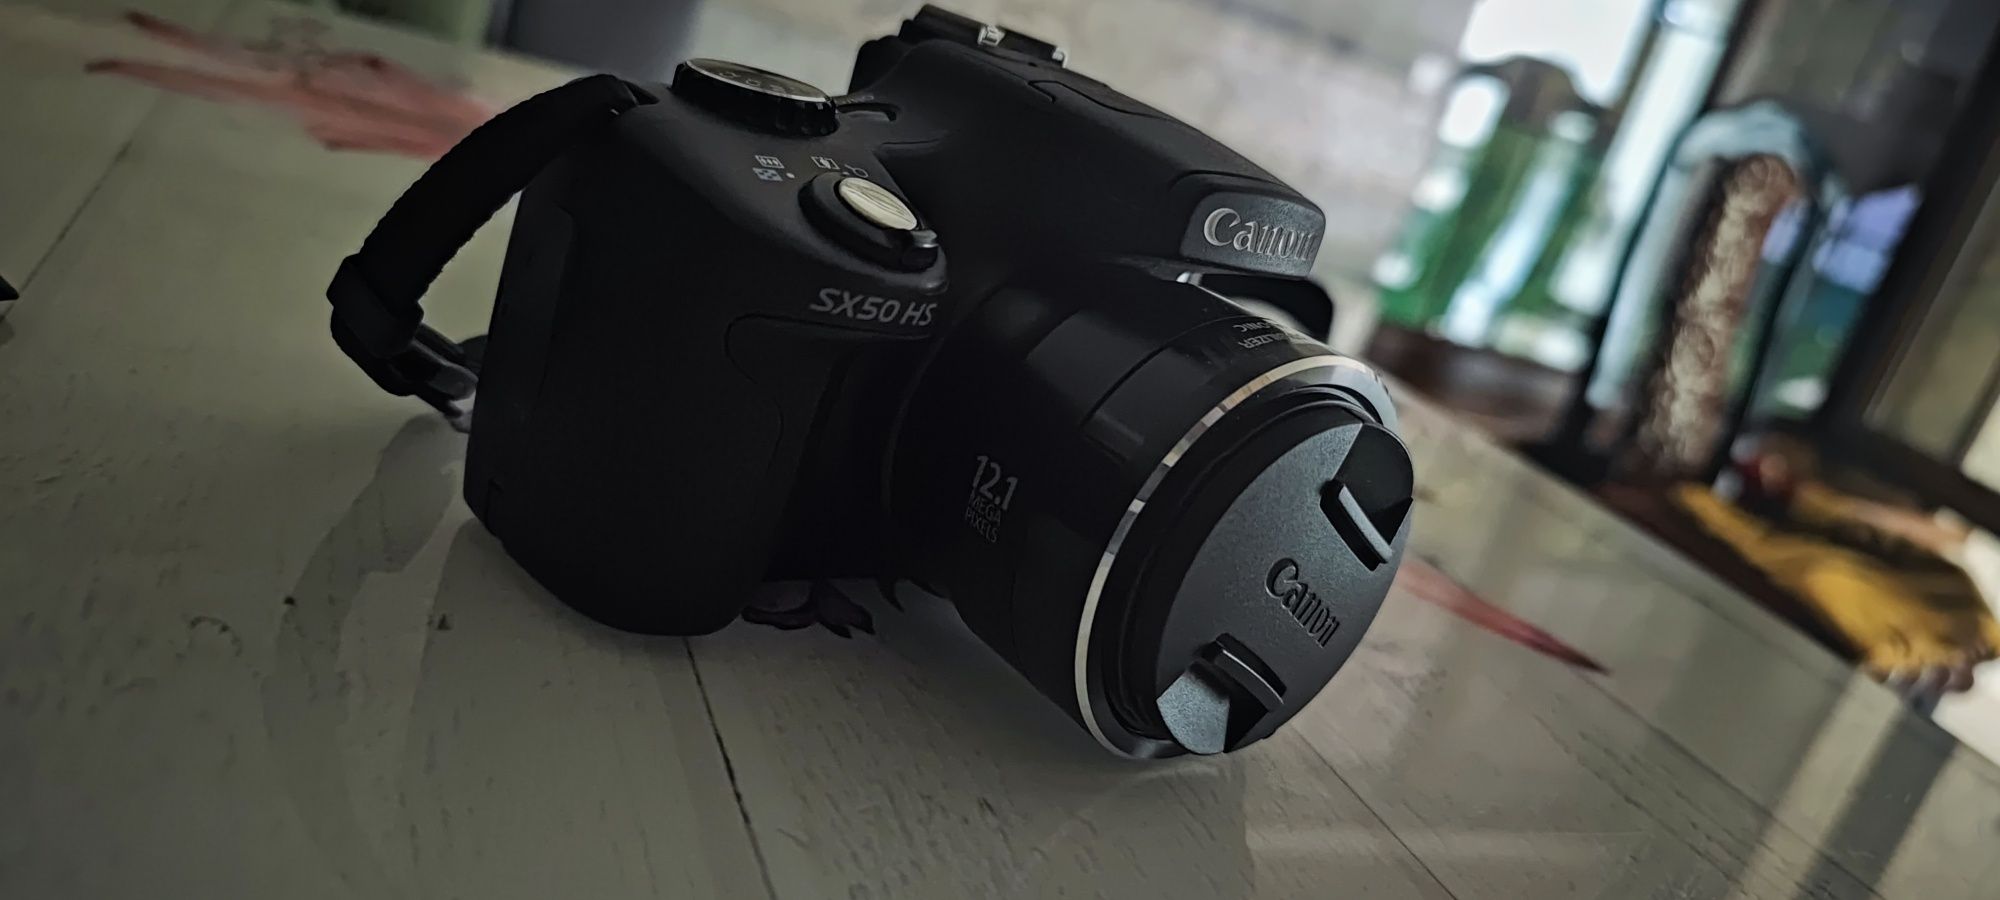 Canon SX 50 HS FotoAparat